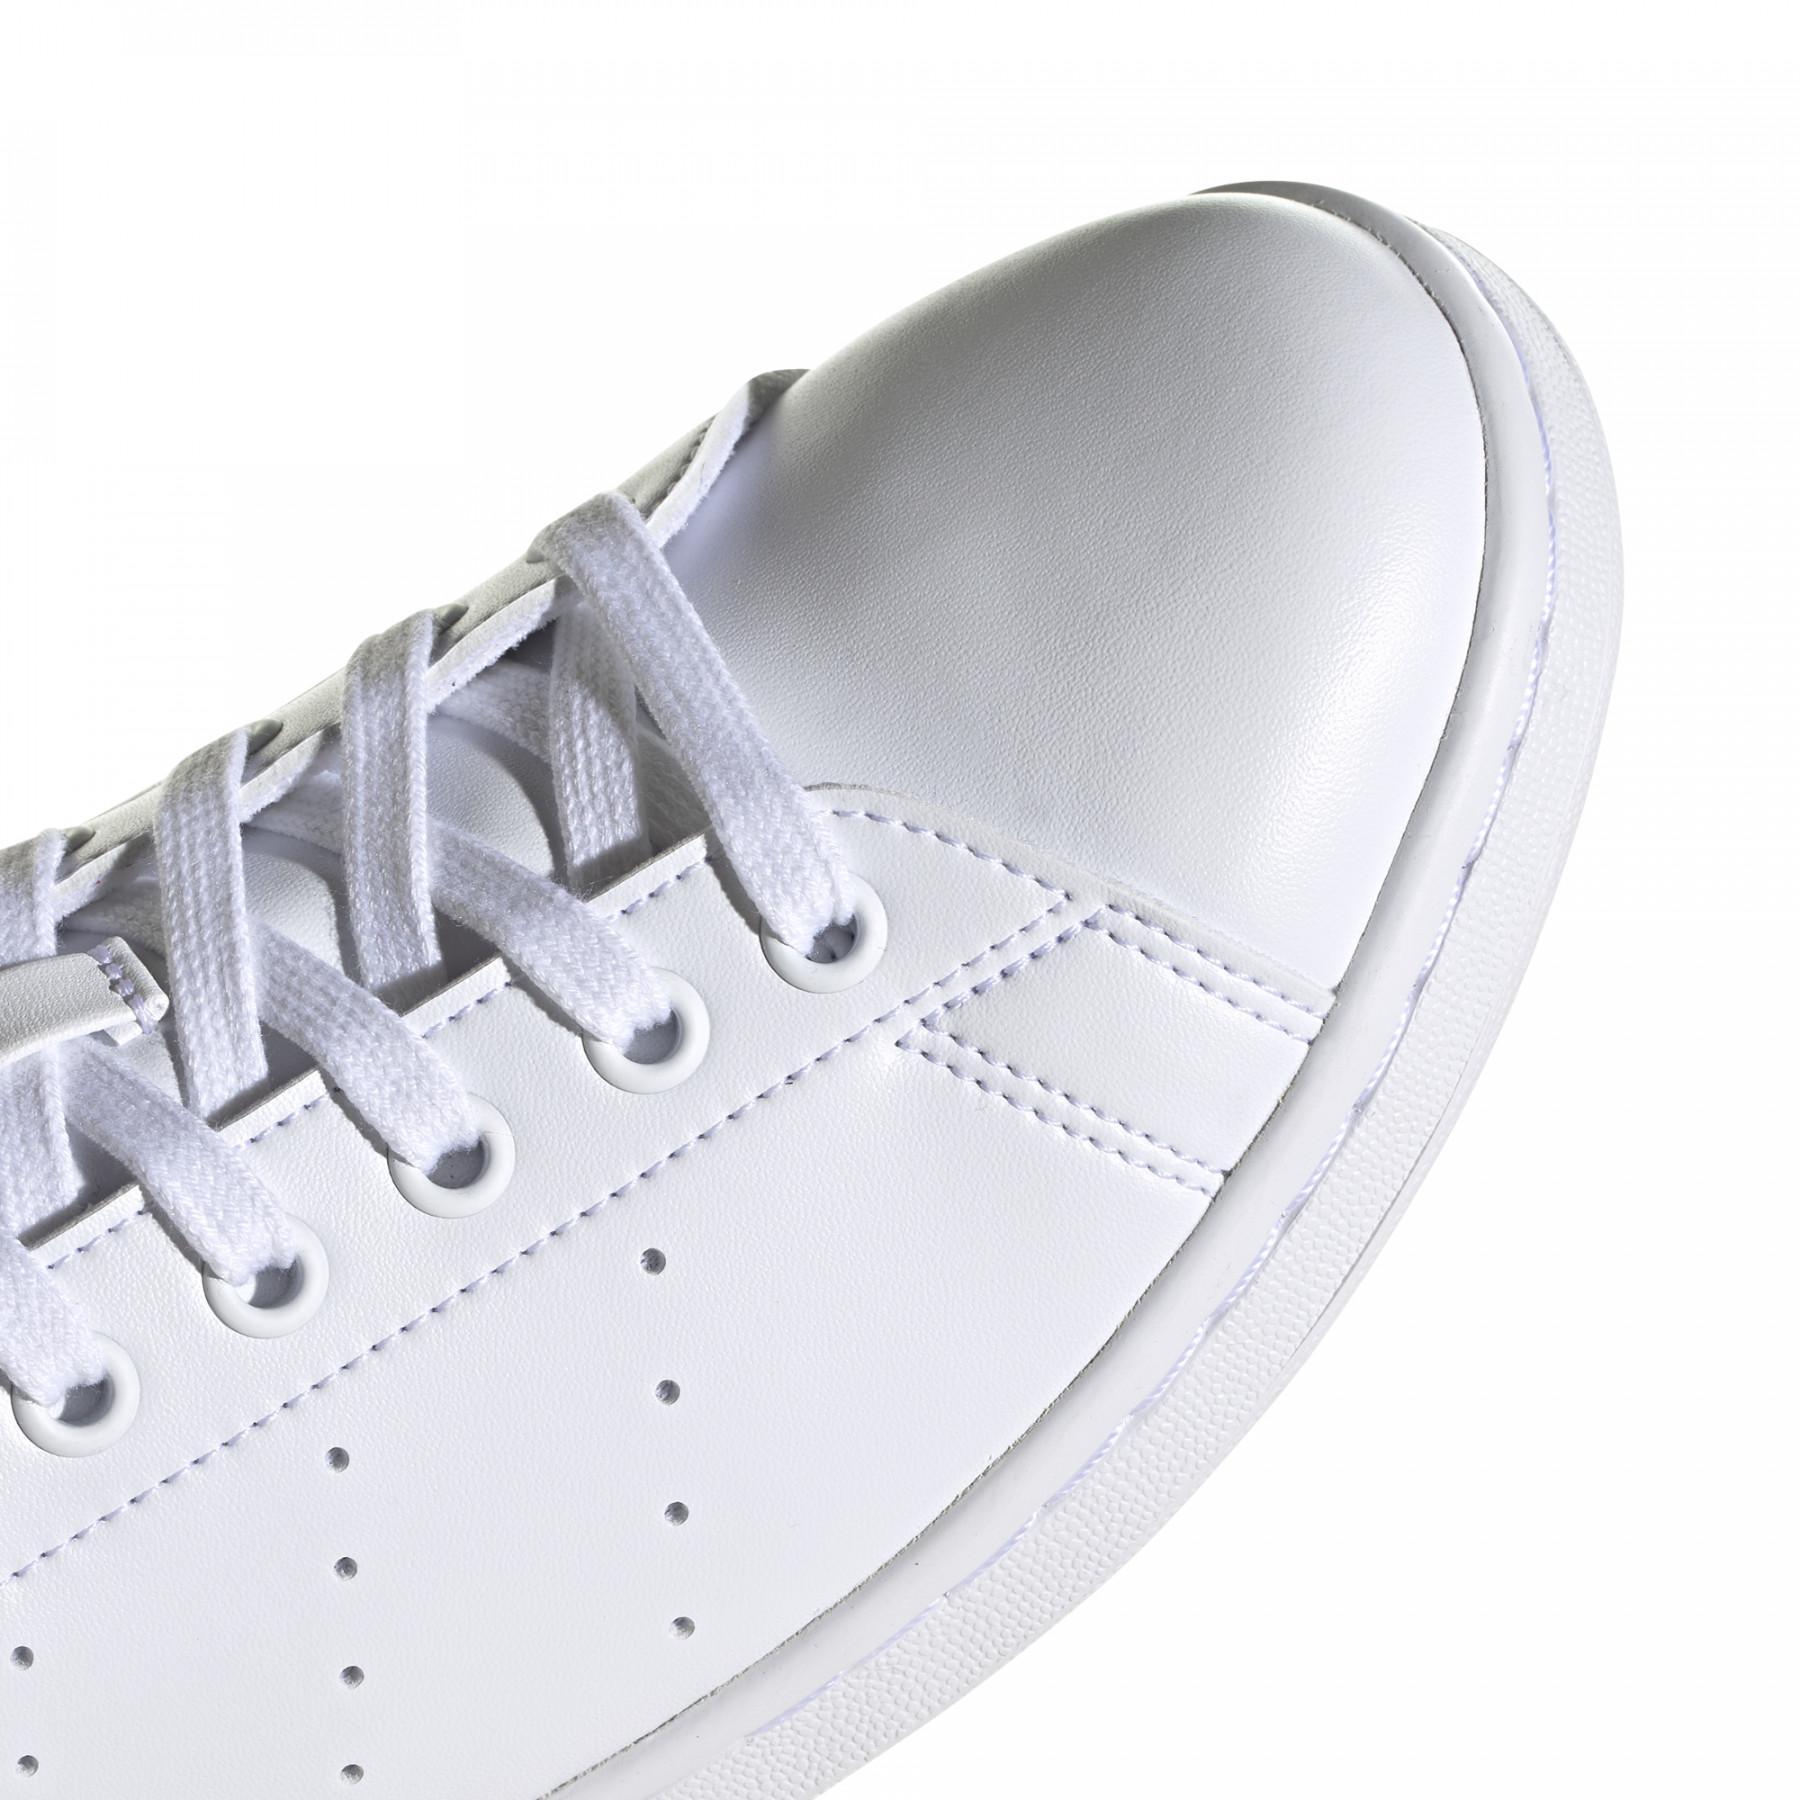 Sneakers adidas Originals Stan Smith